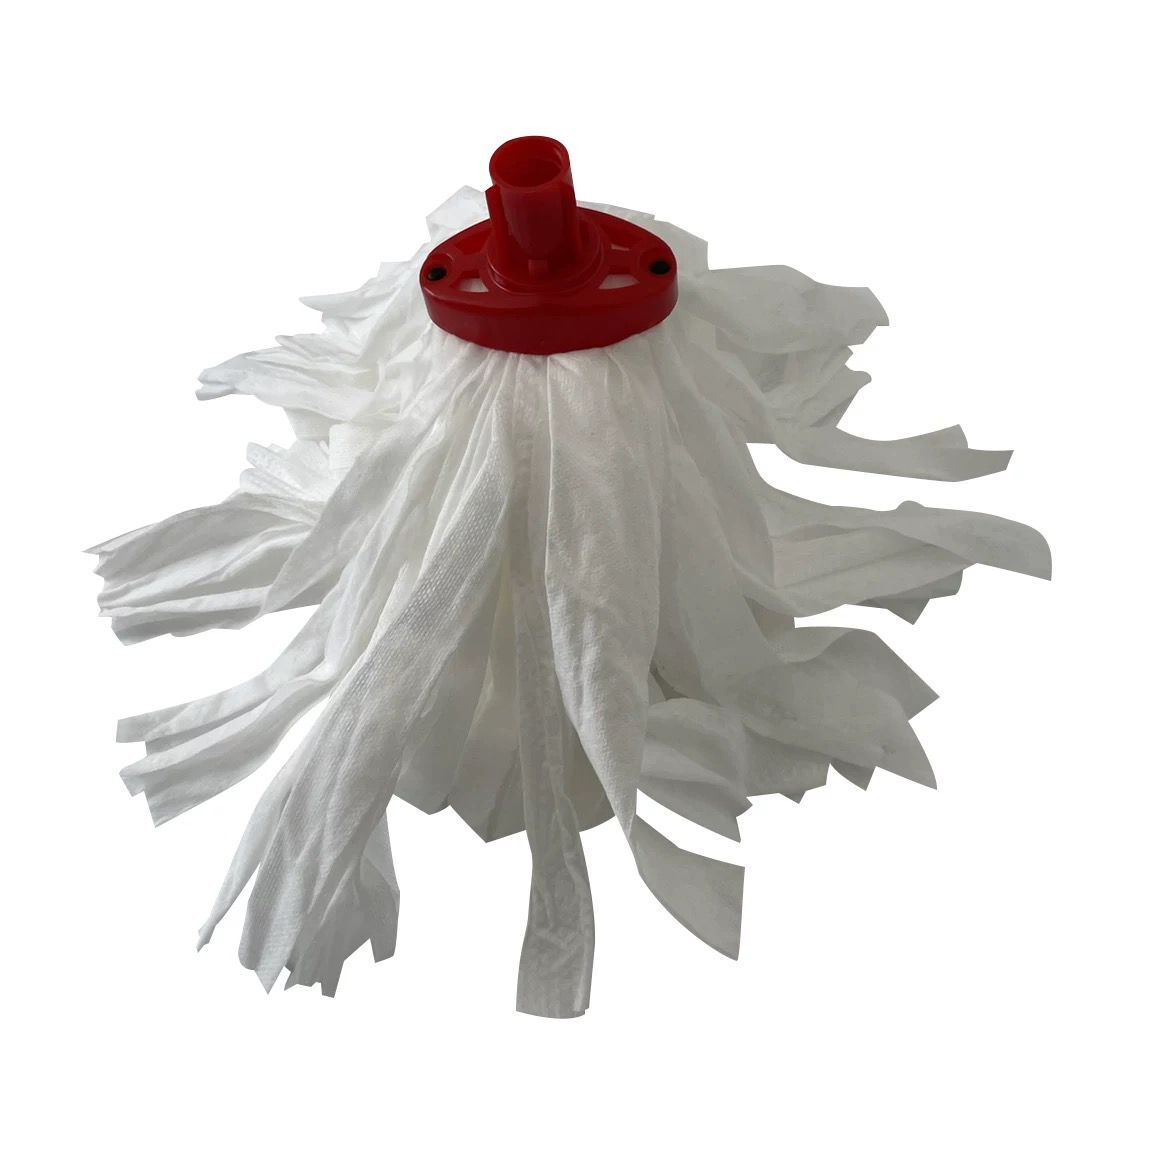 QL2056H  Non-wovnen fabric mop head